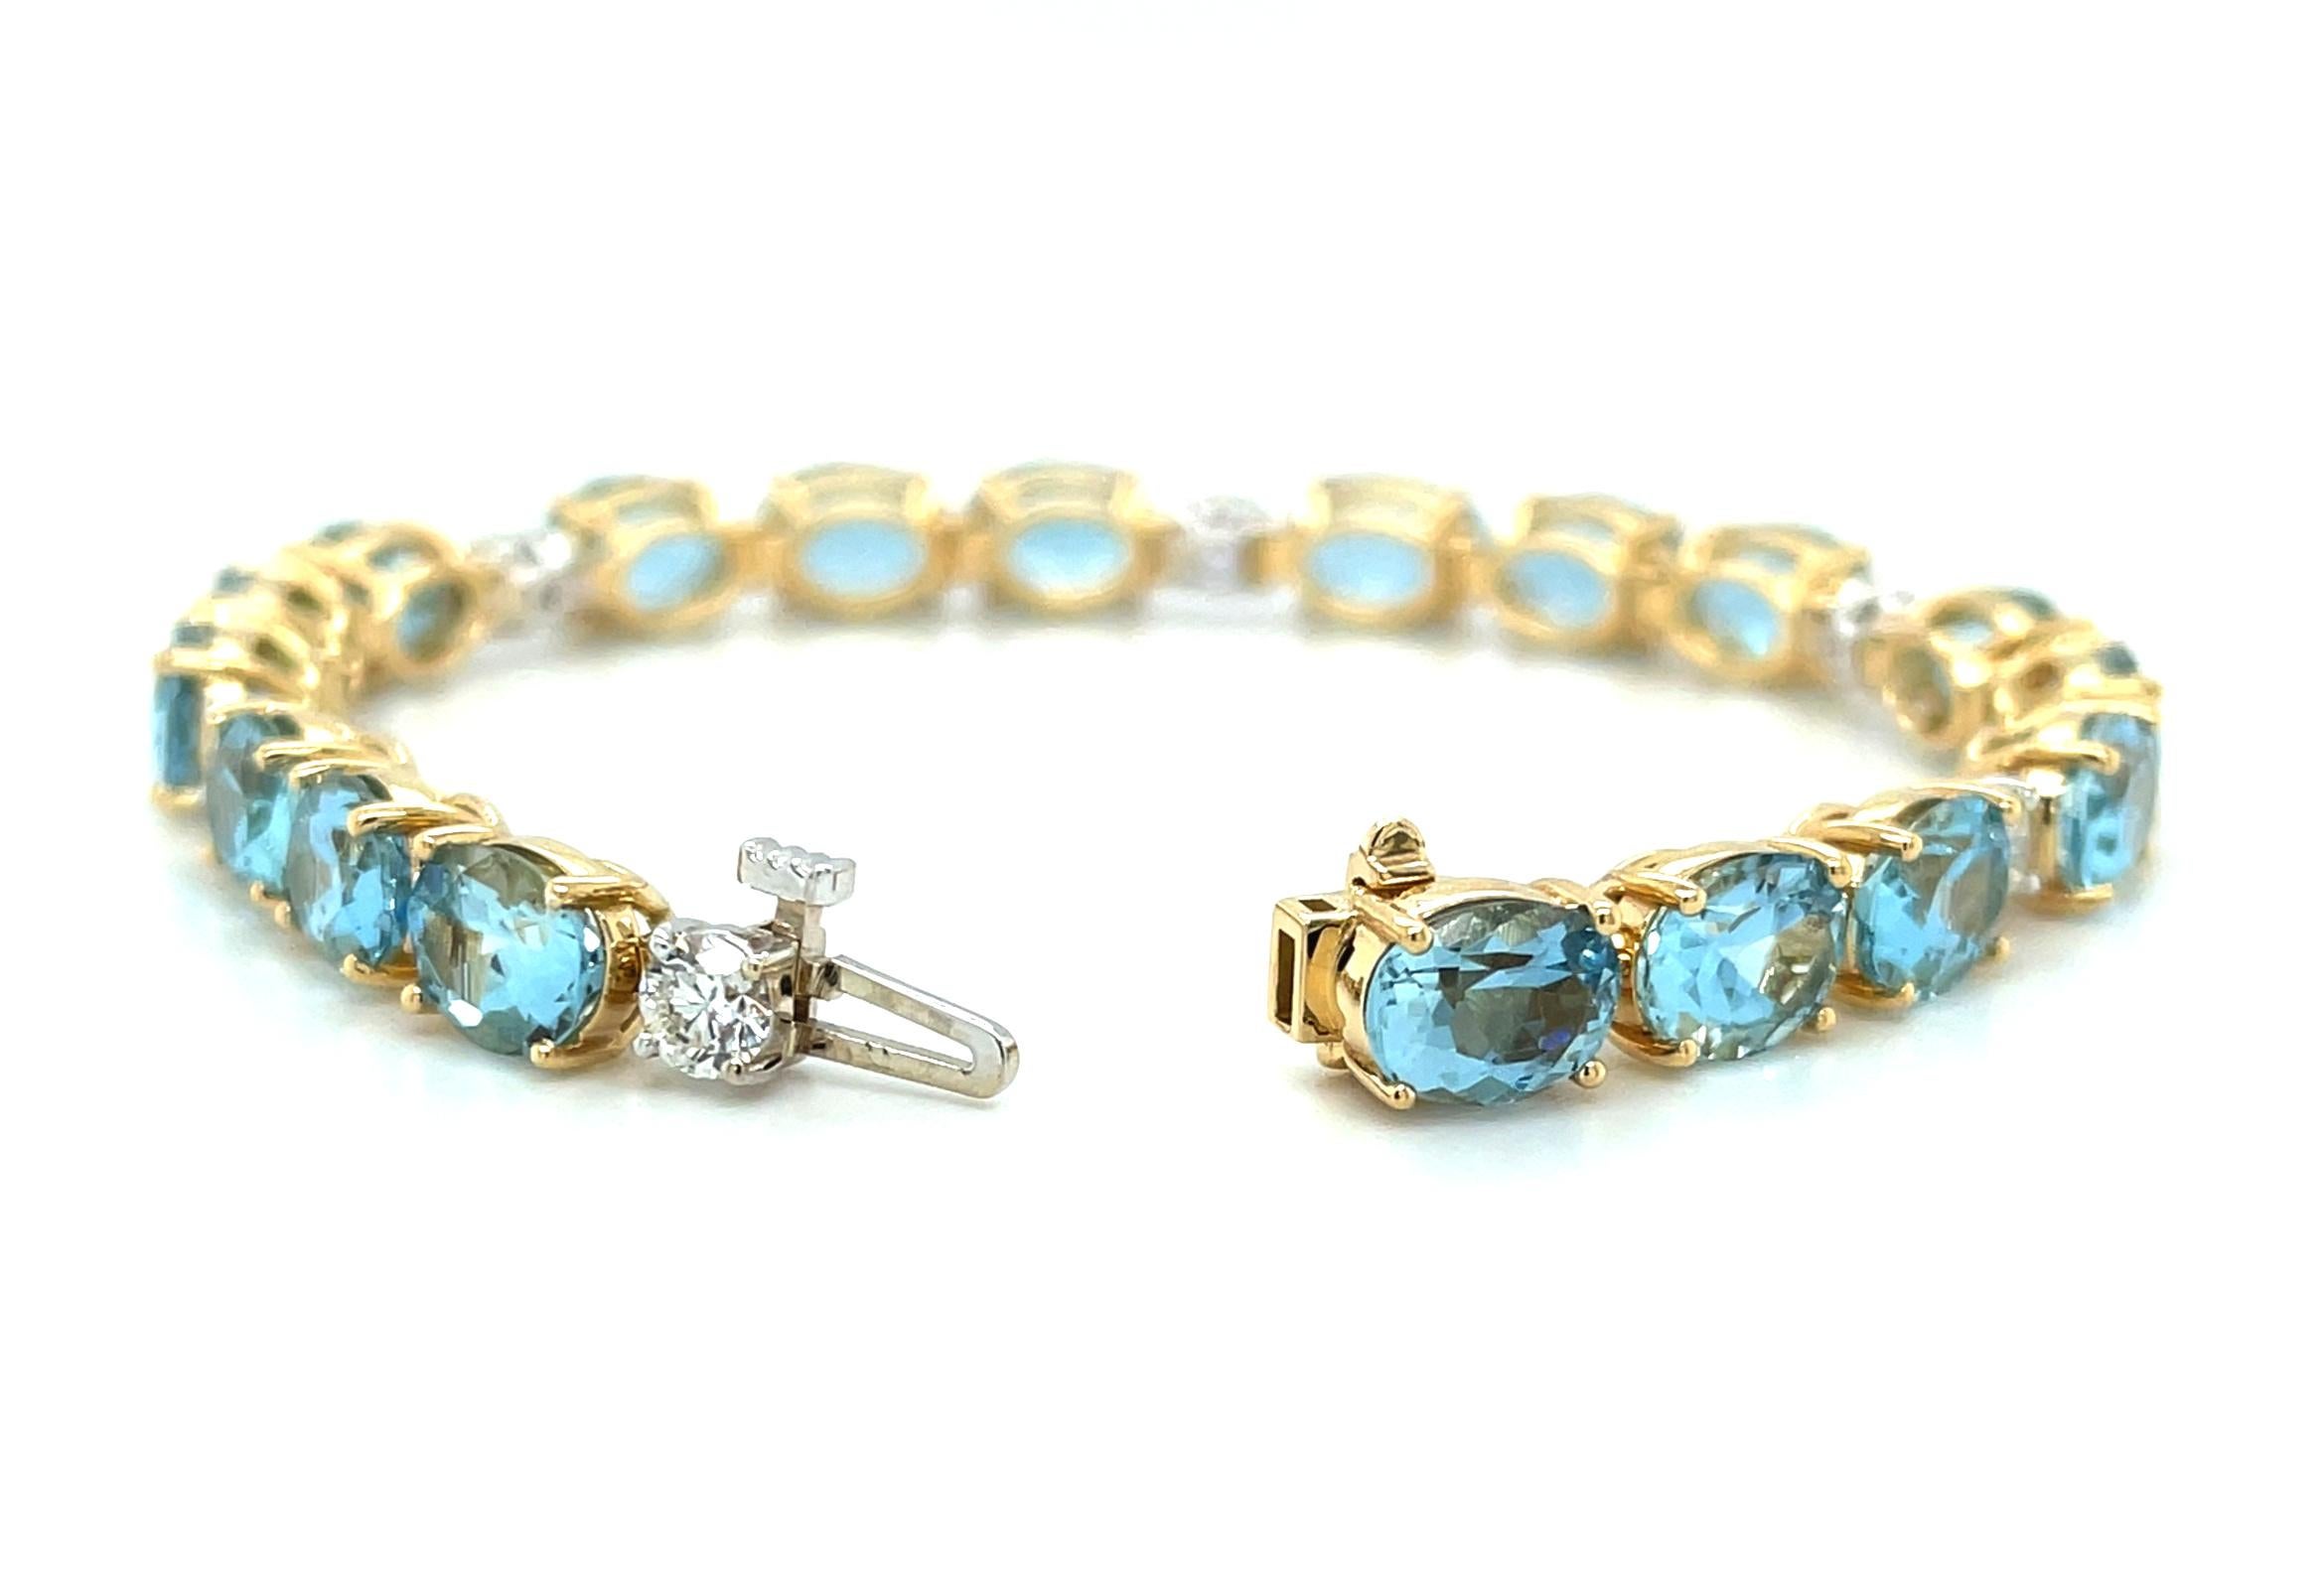 Ce bracelet de tennis en aigue-marine et diamants est absolument magnifique ! Il est serti de 18 aigues-marines ovales magnifiquement assorties, d'une brillance remarquable et d'une couleur bleu moyen éclatante. Chaque pierre cristalline pèse plus